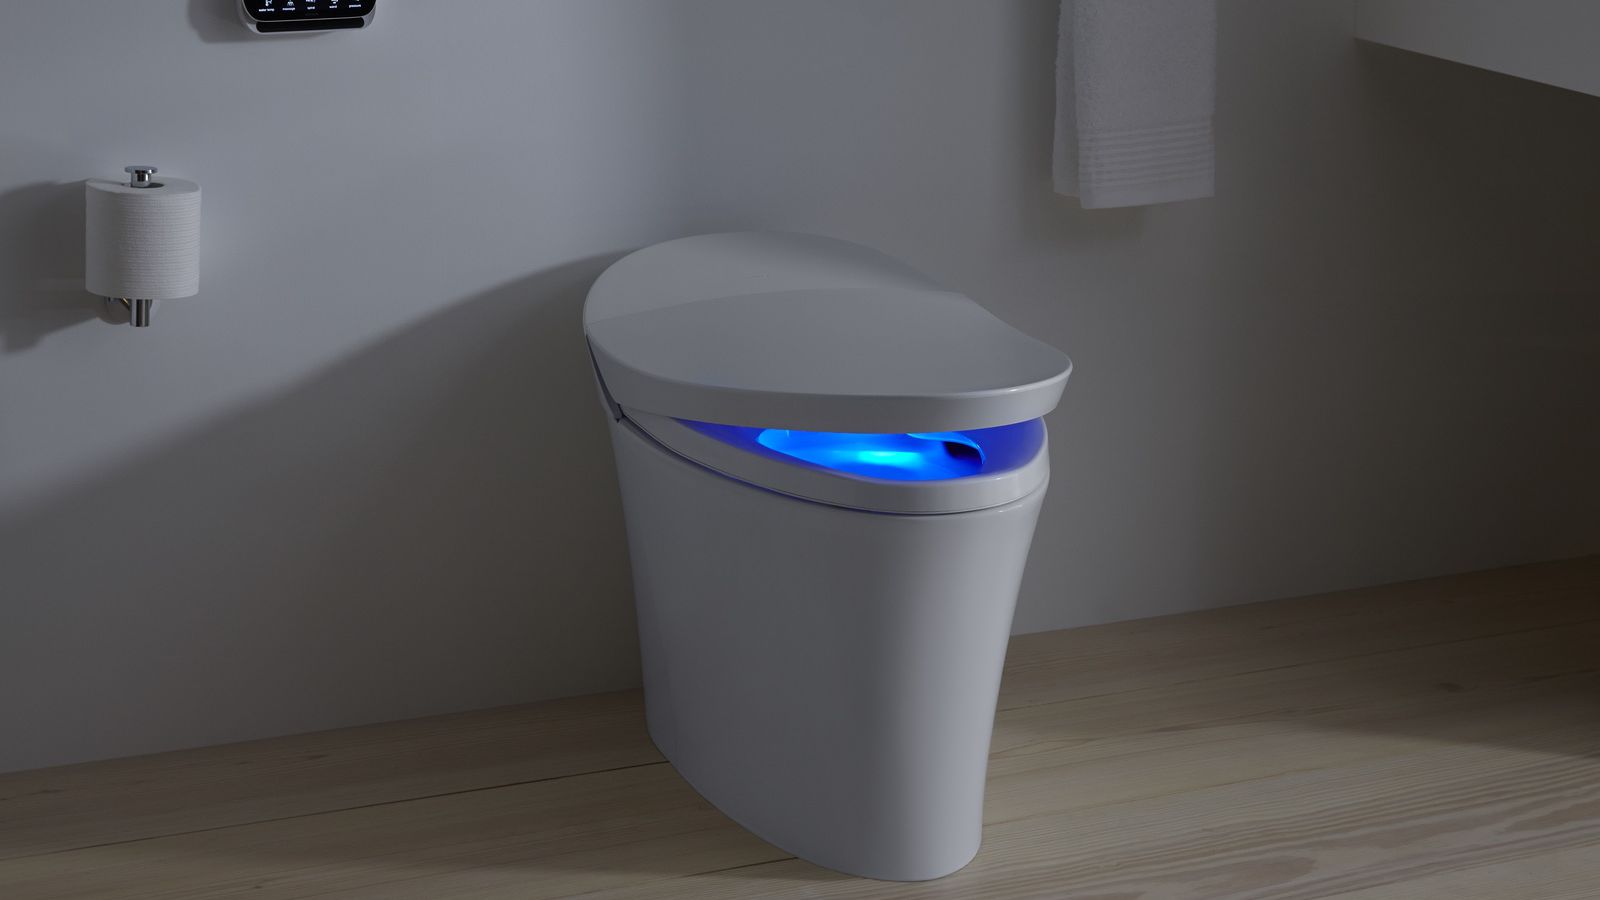 «Intelligents» les toilettes sont les principales étoiles de CES 2019. Voici quelques-uns d'entre eux